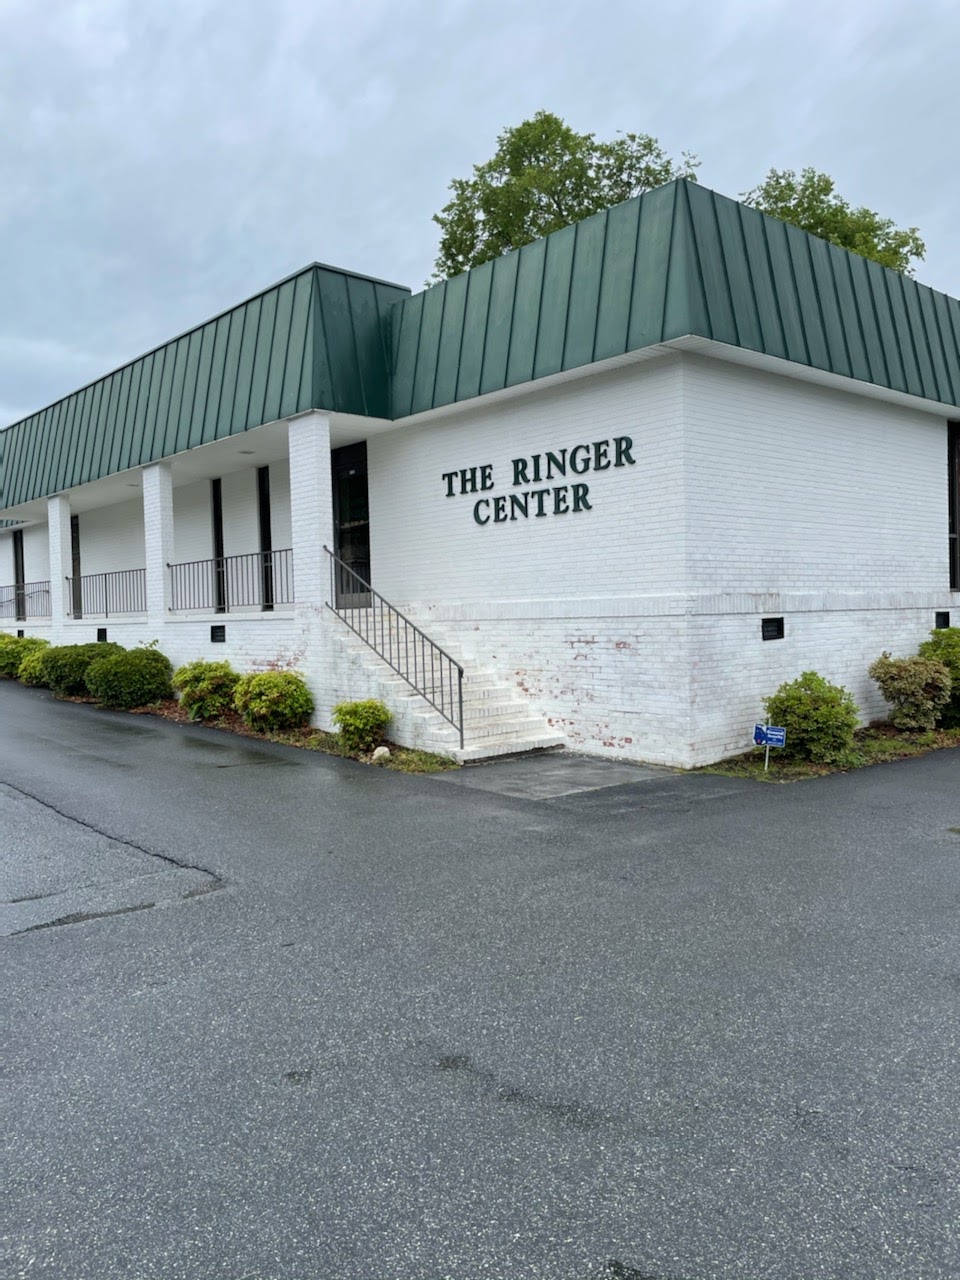 The Ringer Center